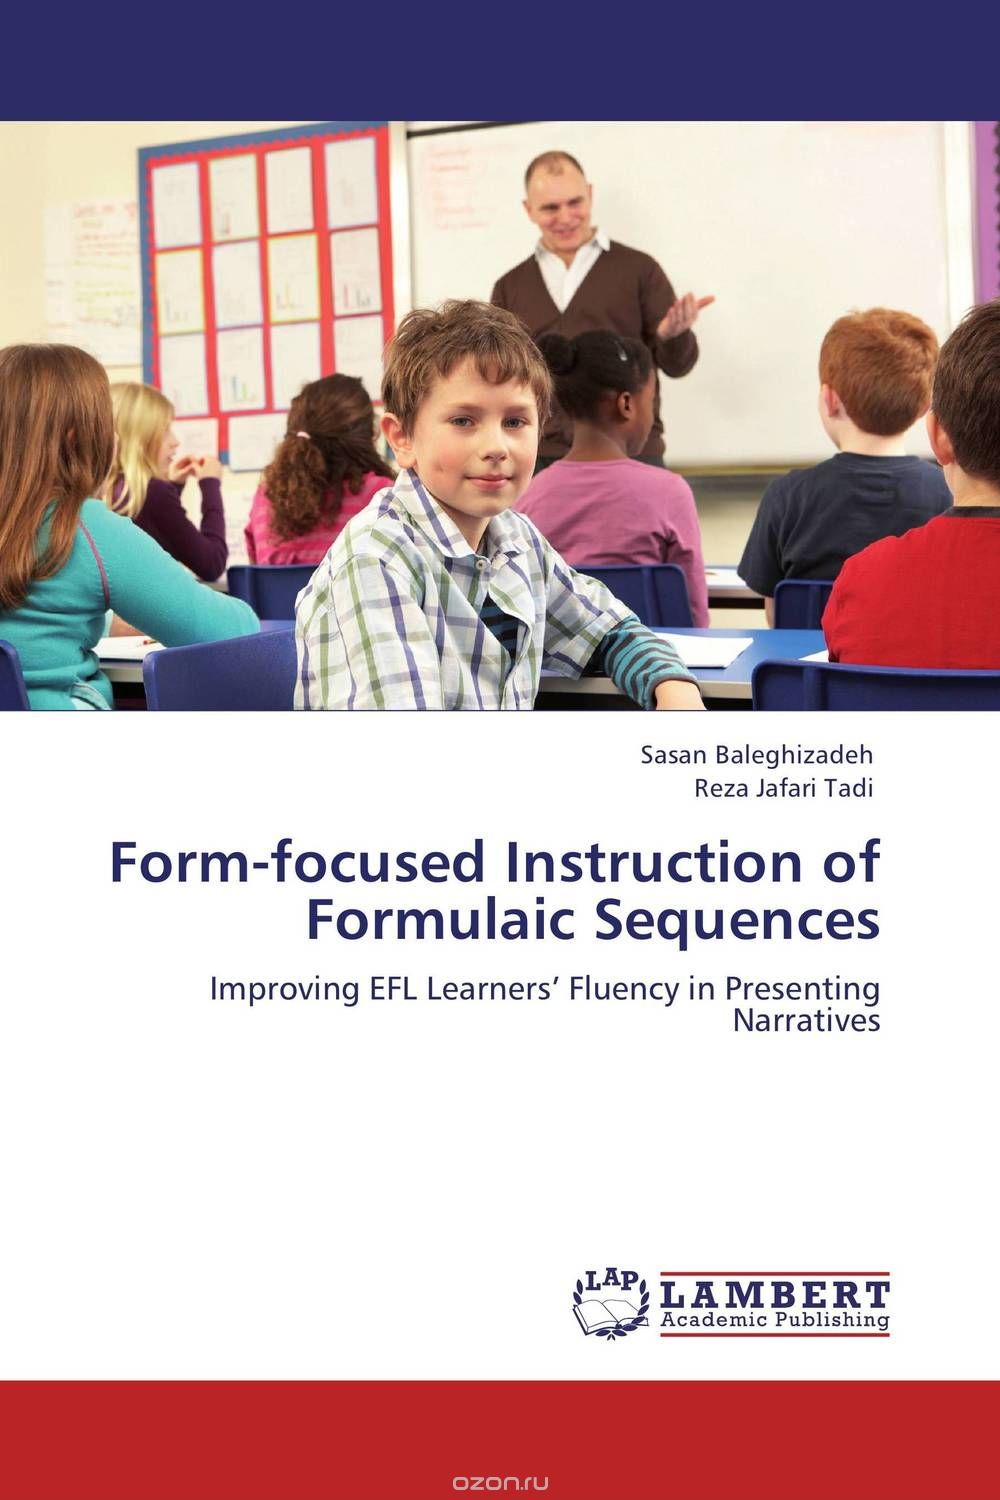 Скачать книгу "Form-focused Instruction of Formulaic Sequences"